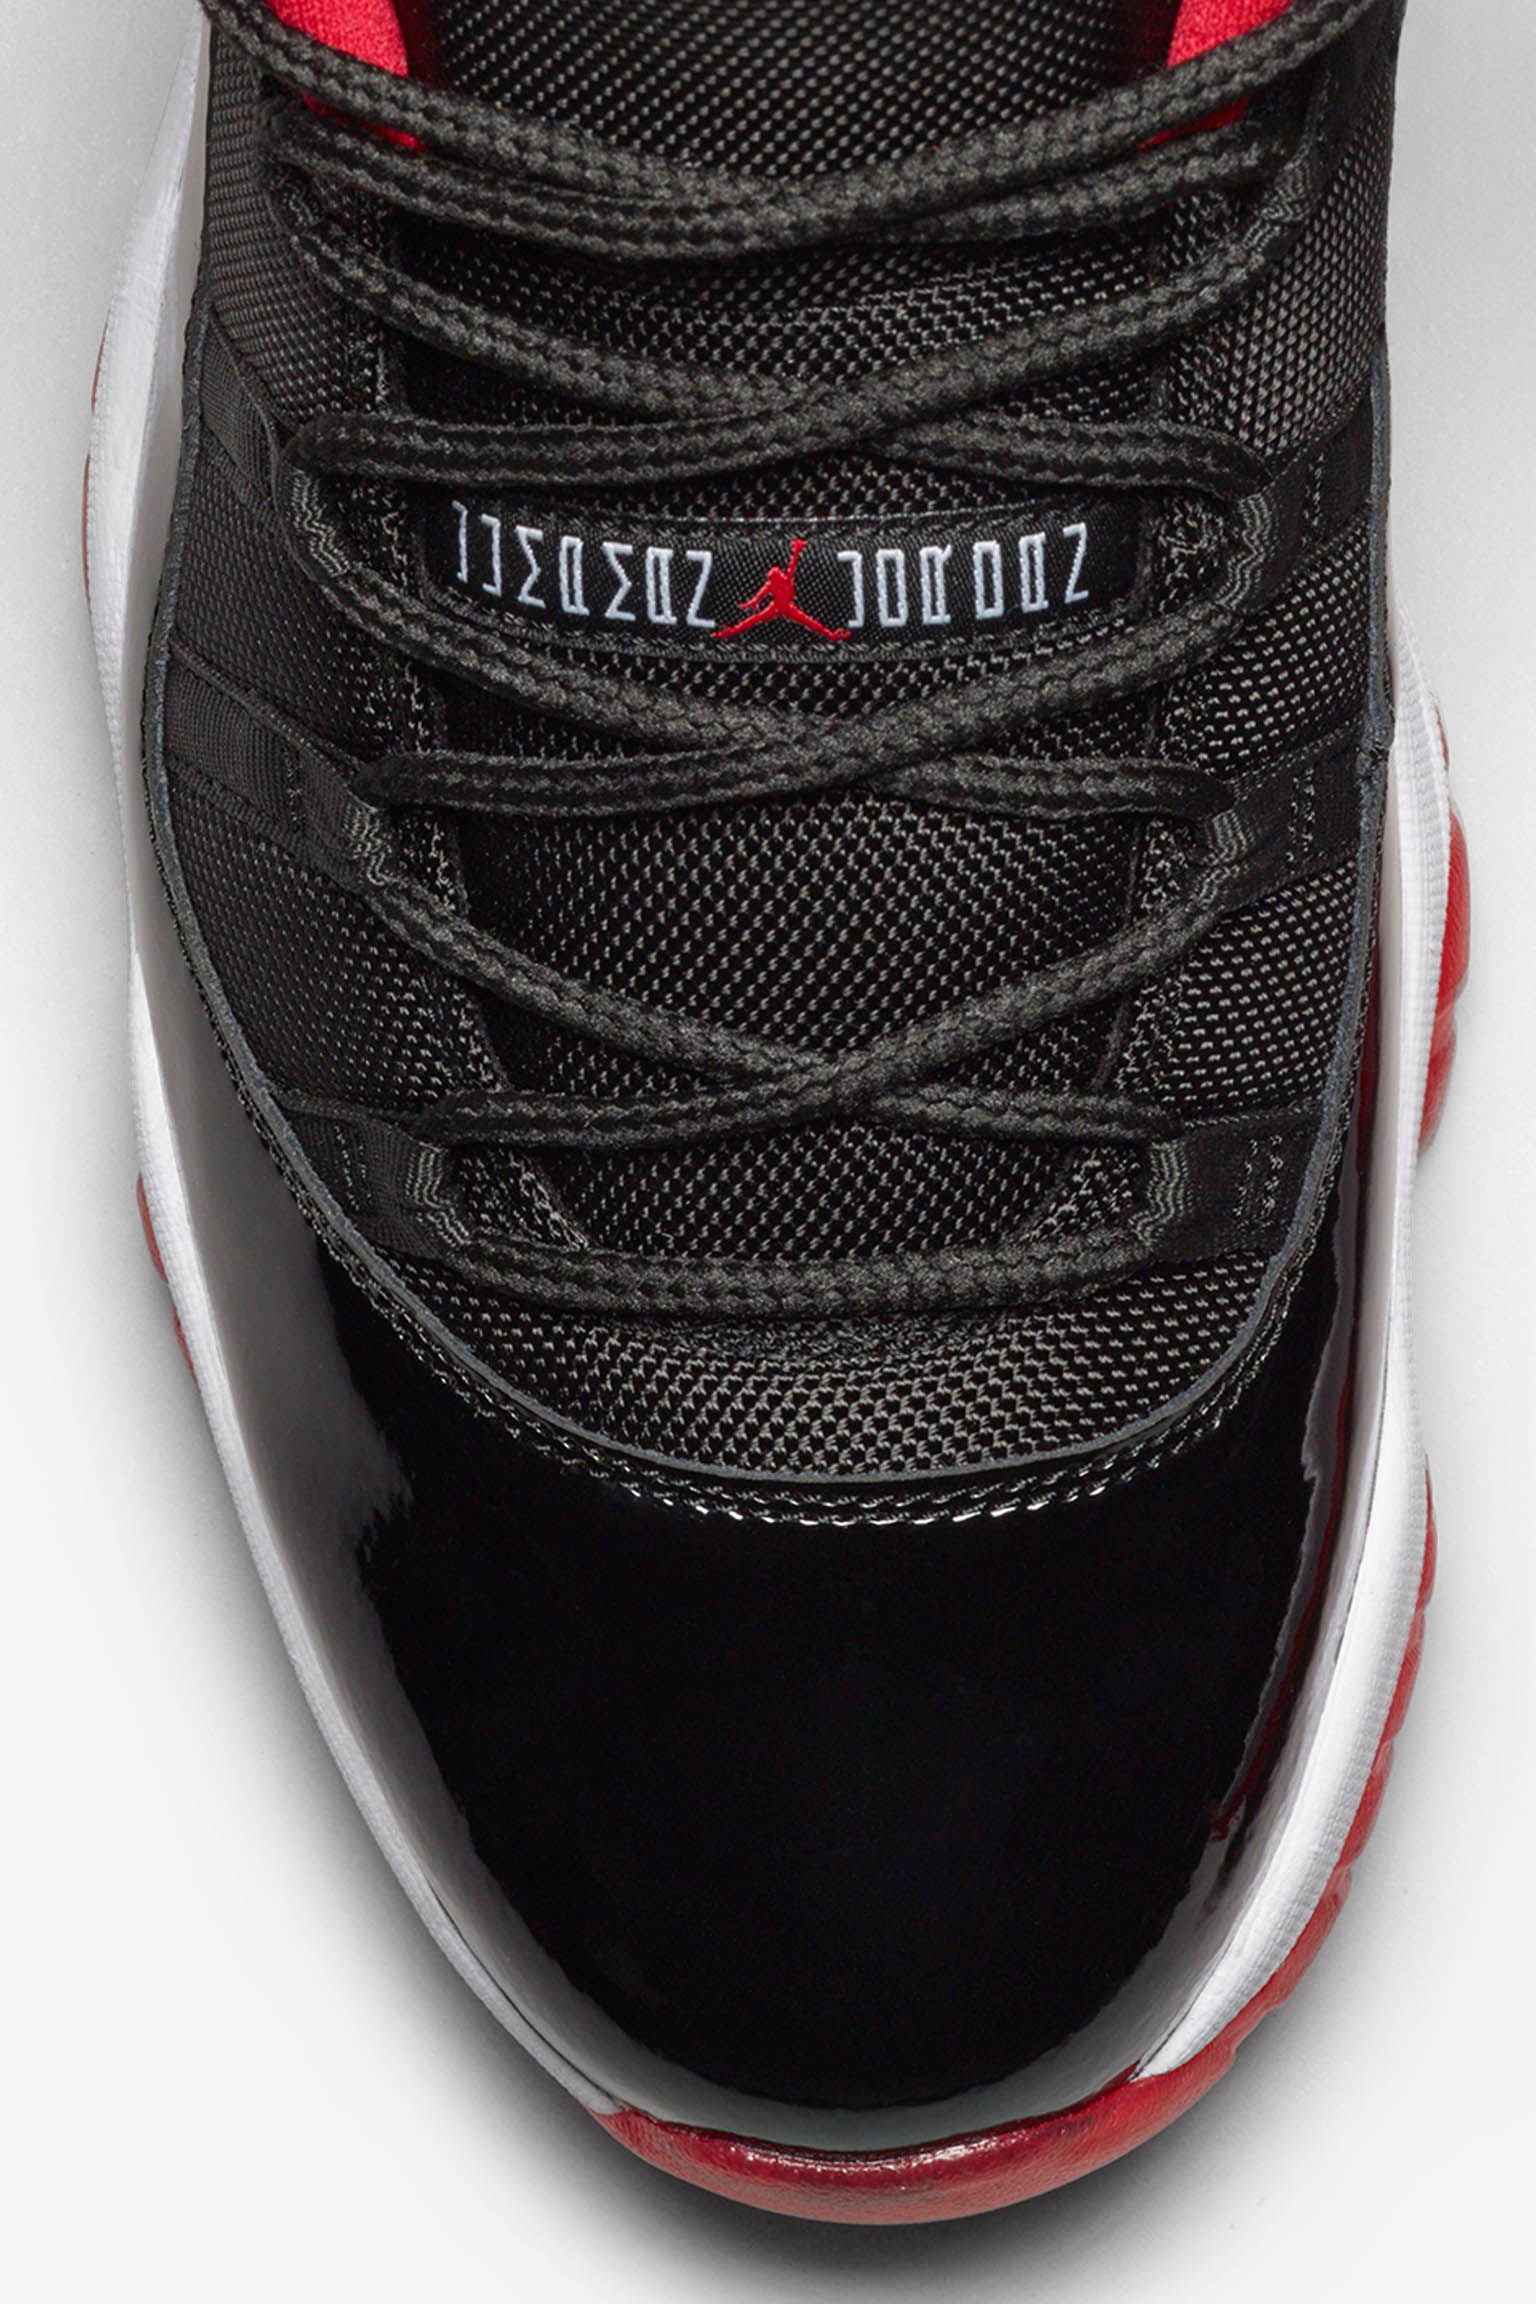 Air Jordan 11 Retro Low 'True Red' Release Nike